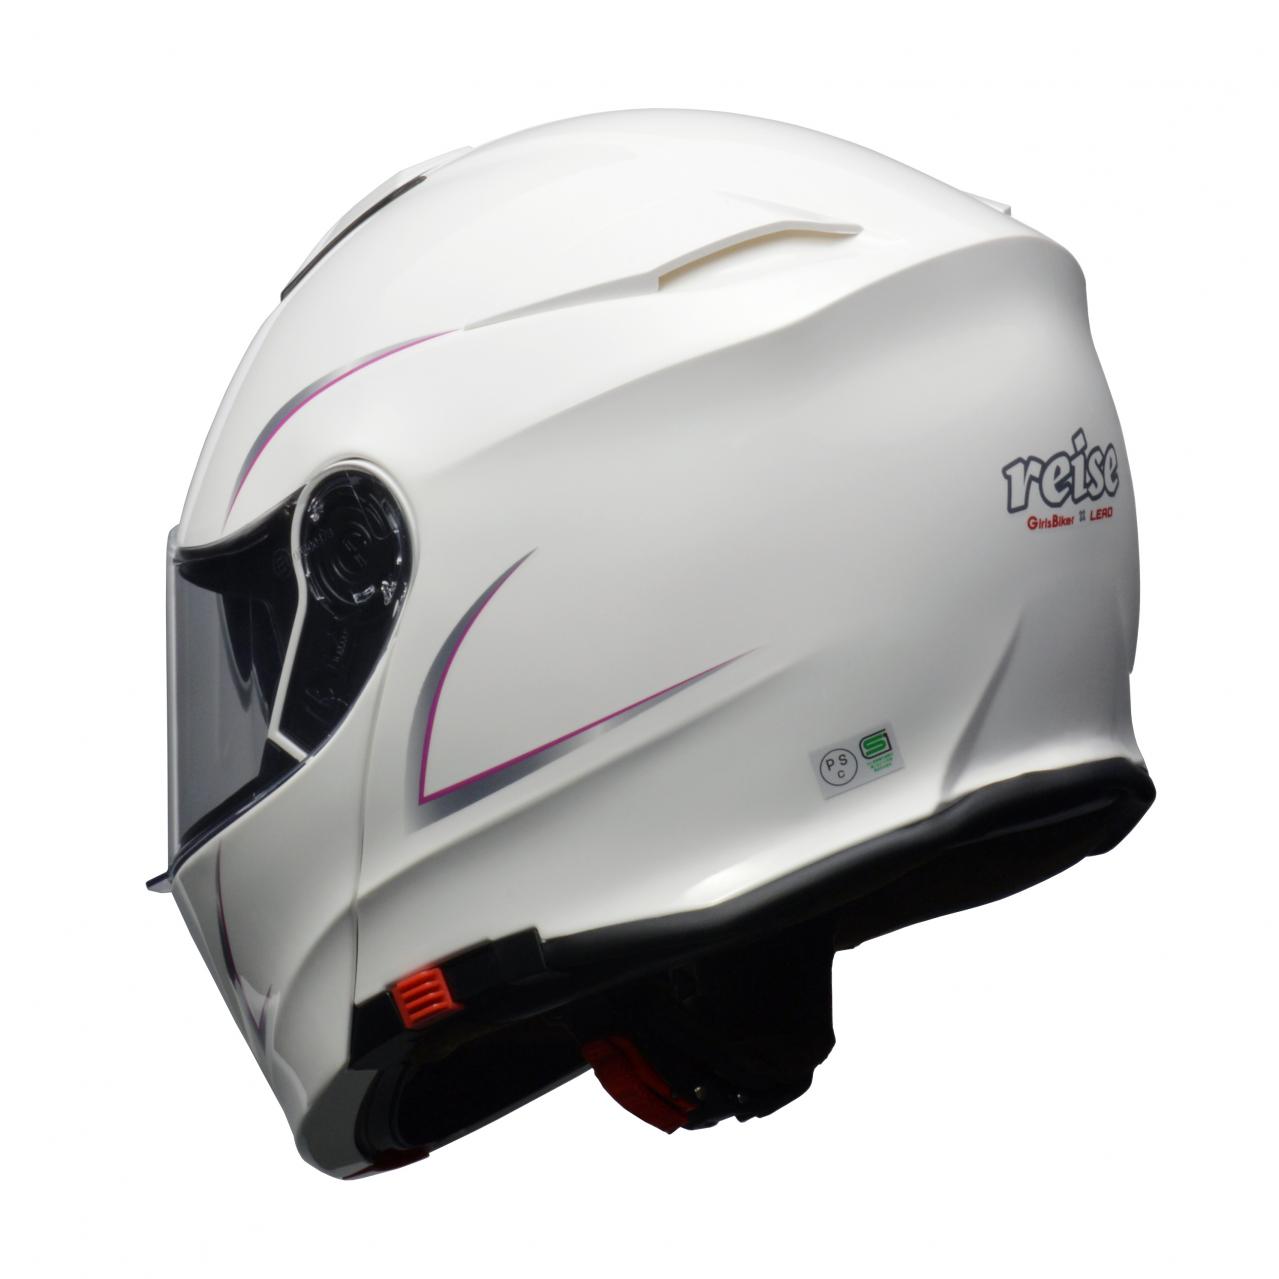 リード工業のシステムヘルメット「reise（レイス）」に女性にぴったり 